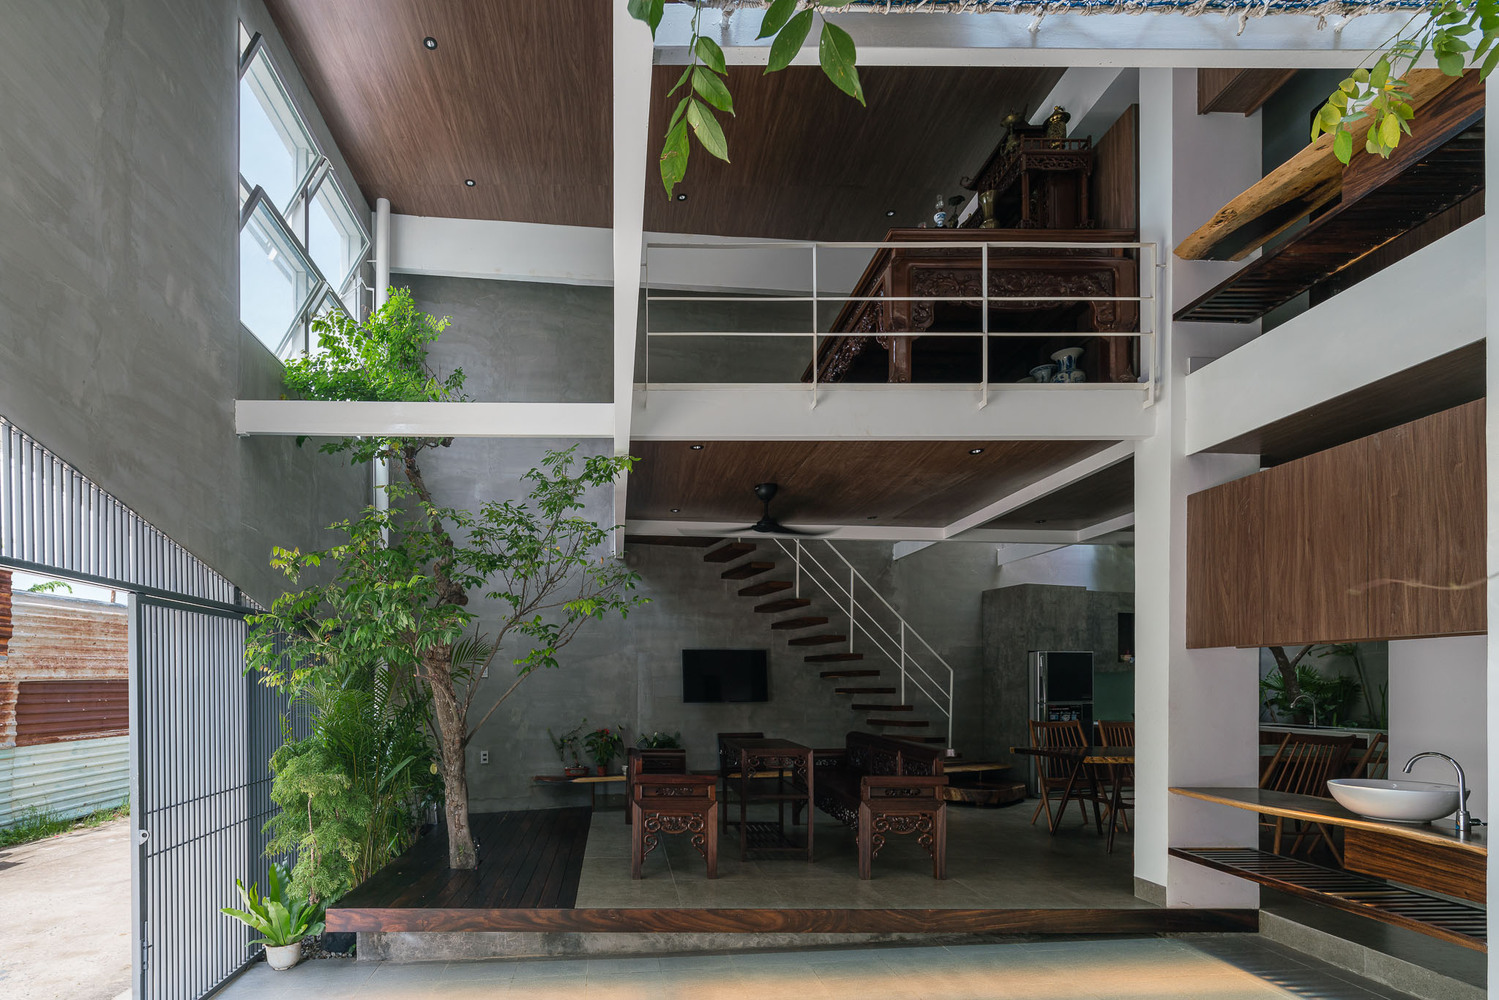 không gian bên trong nhà với nội thất gỗ ấm áp, tường xi măng, cây xanh tốt